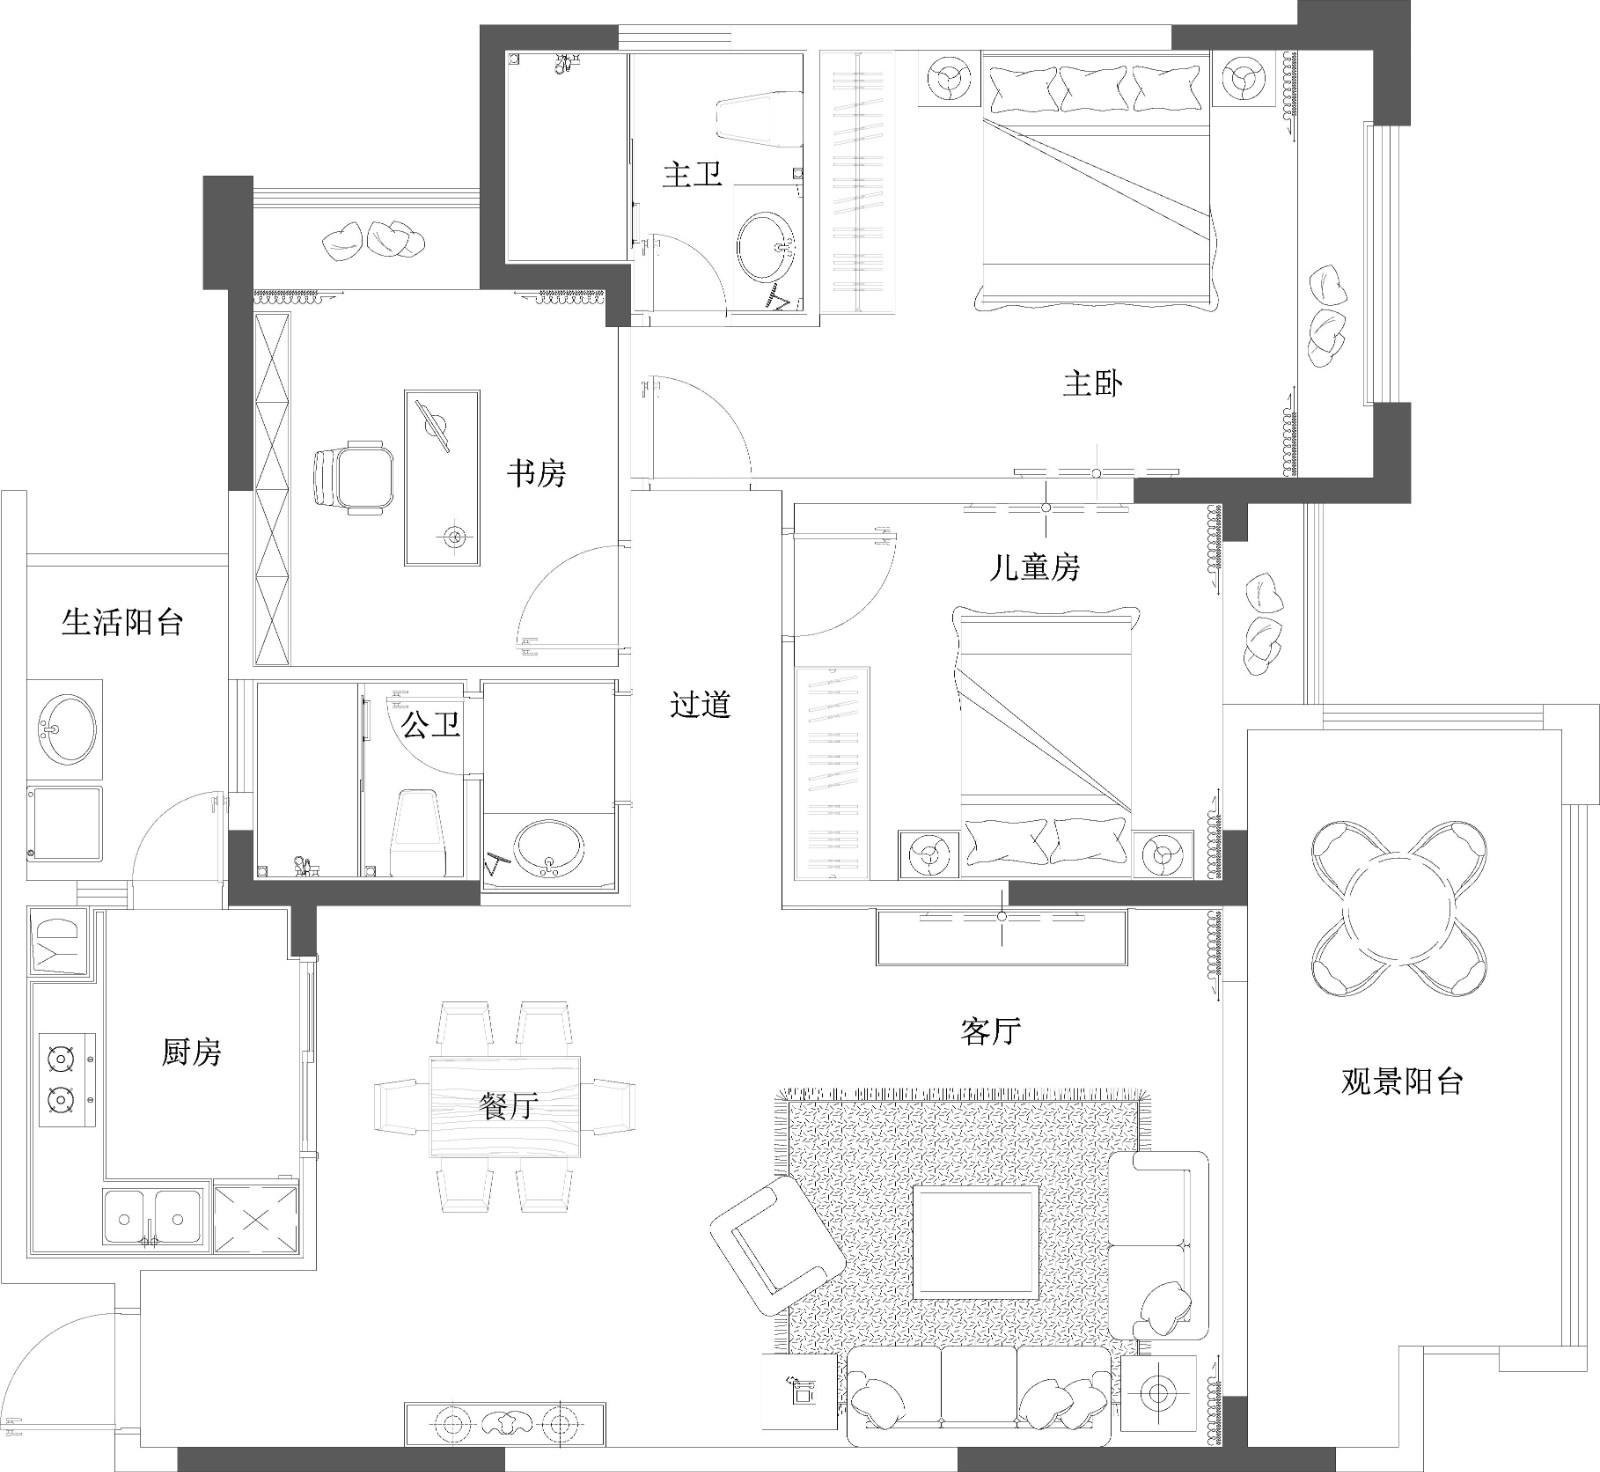 120现代三房装修效果图,现代简约风美丽优雅装修案例效果图-美广网(图1)